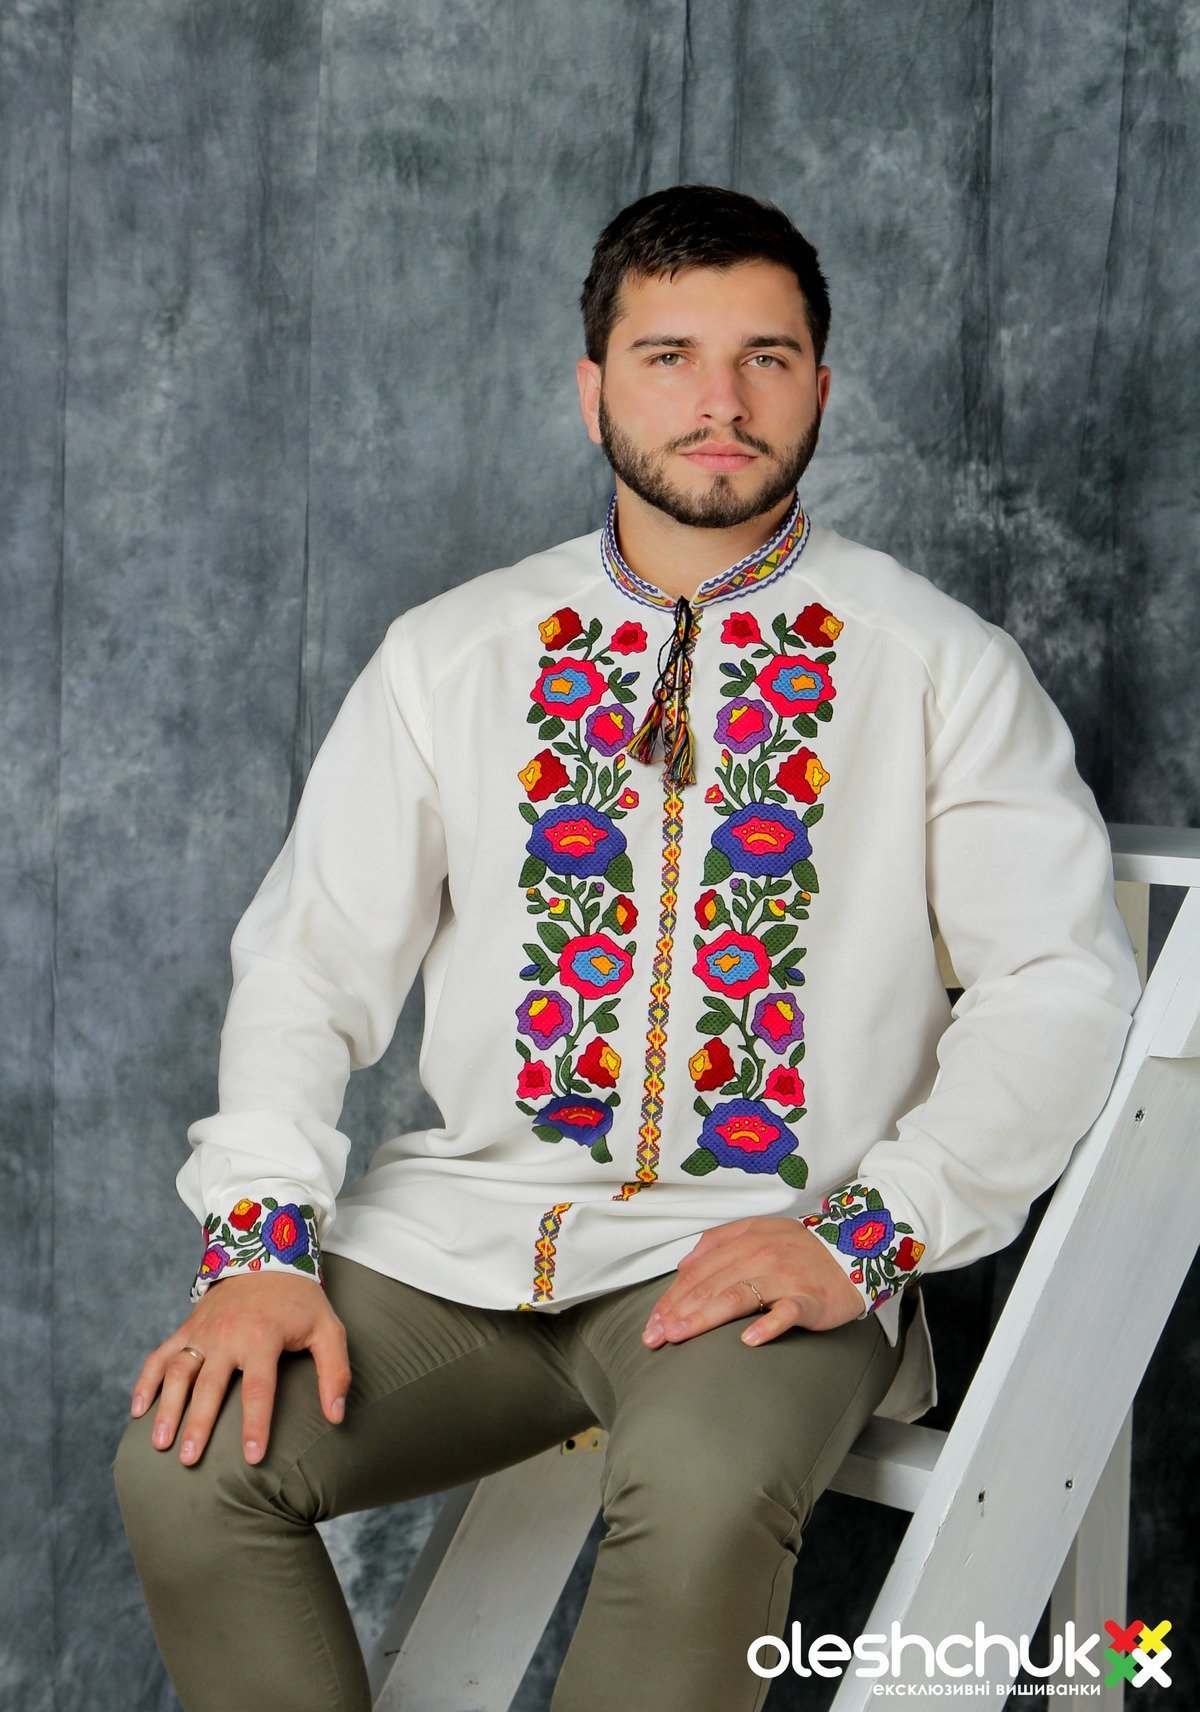 Мужики хохлы. Украинская рубаха мужская. Украинские мужчины. Вышиванка украинская мужская. Мужчина в вышиванке.